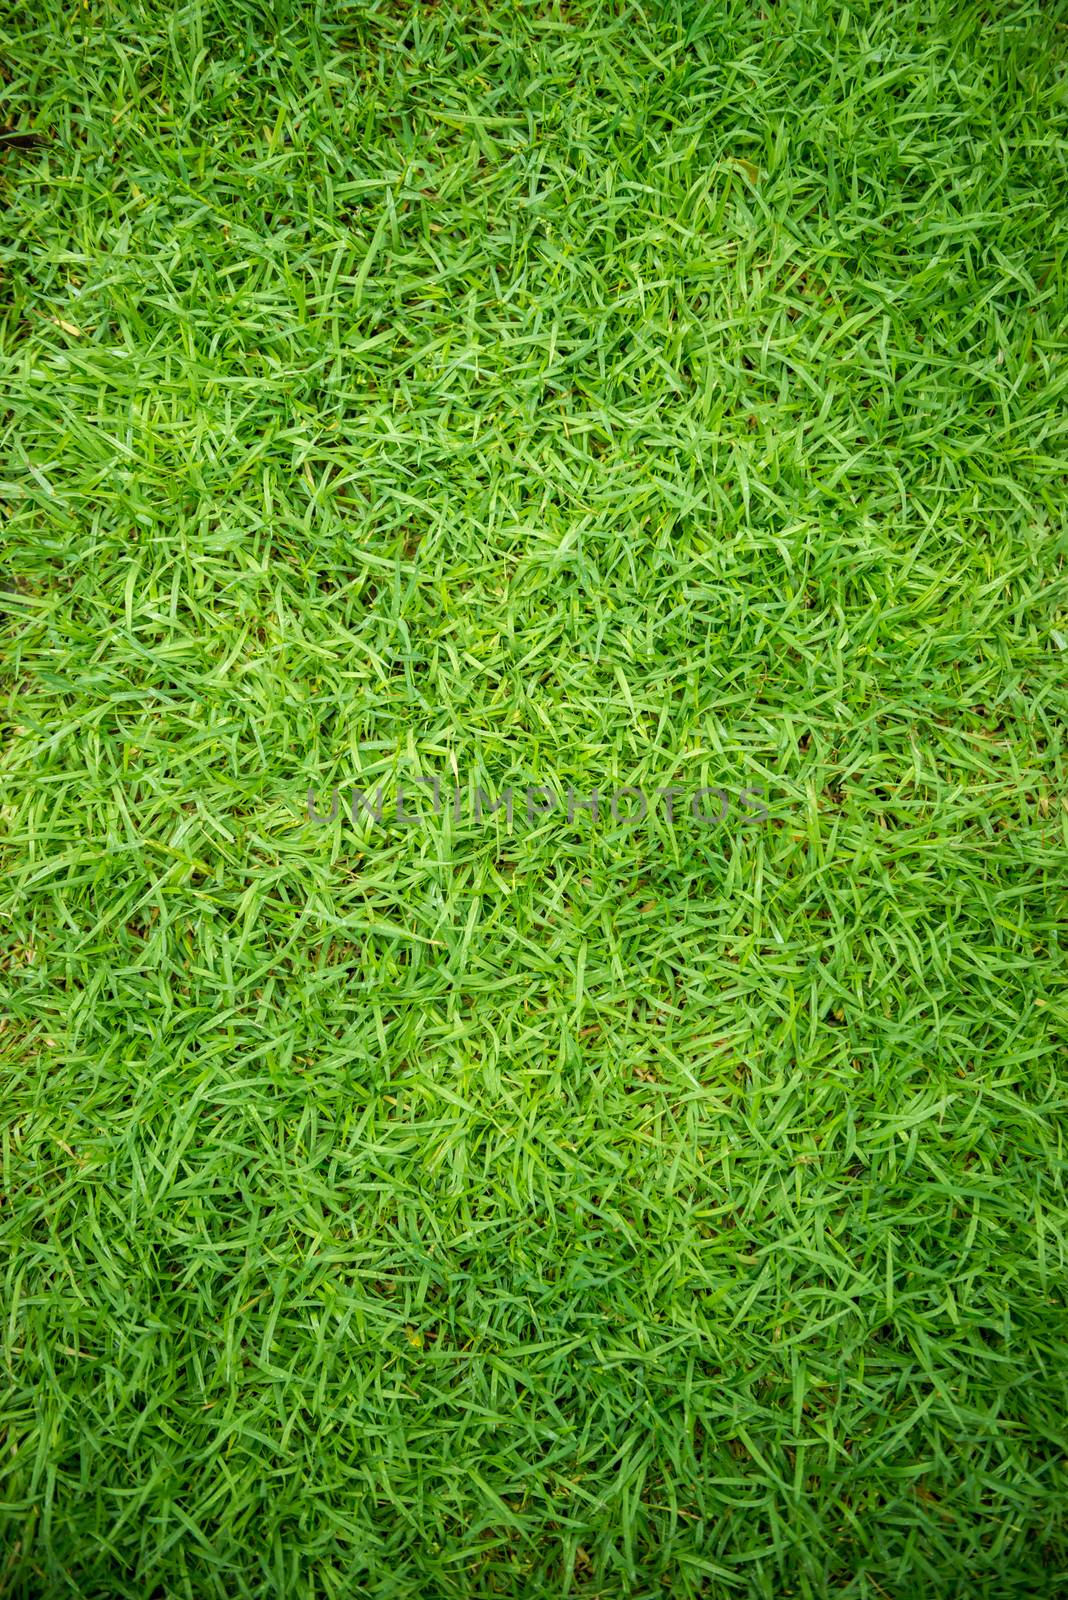 green grass texture by antpkr